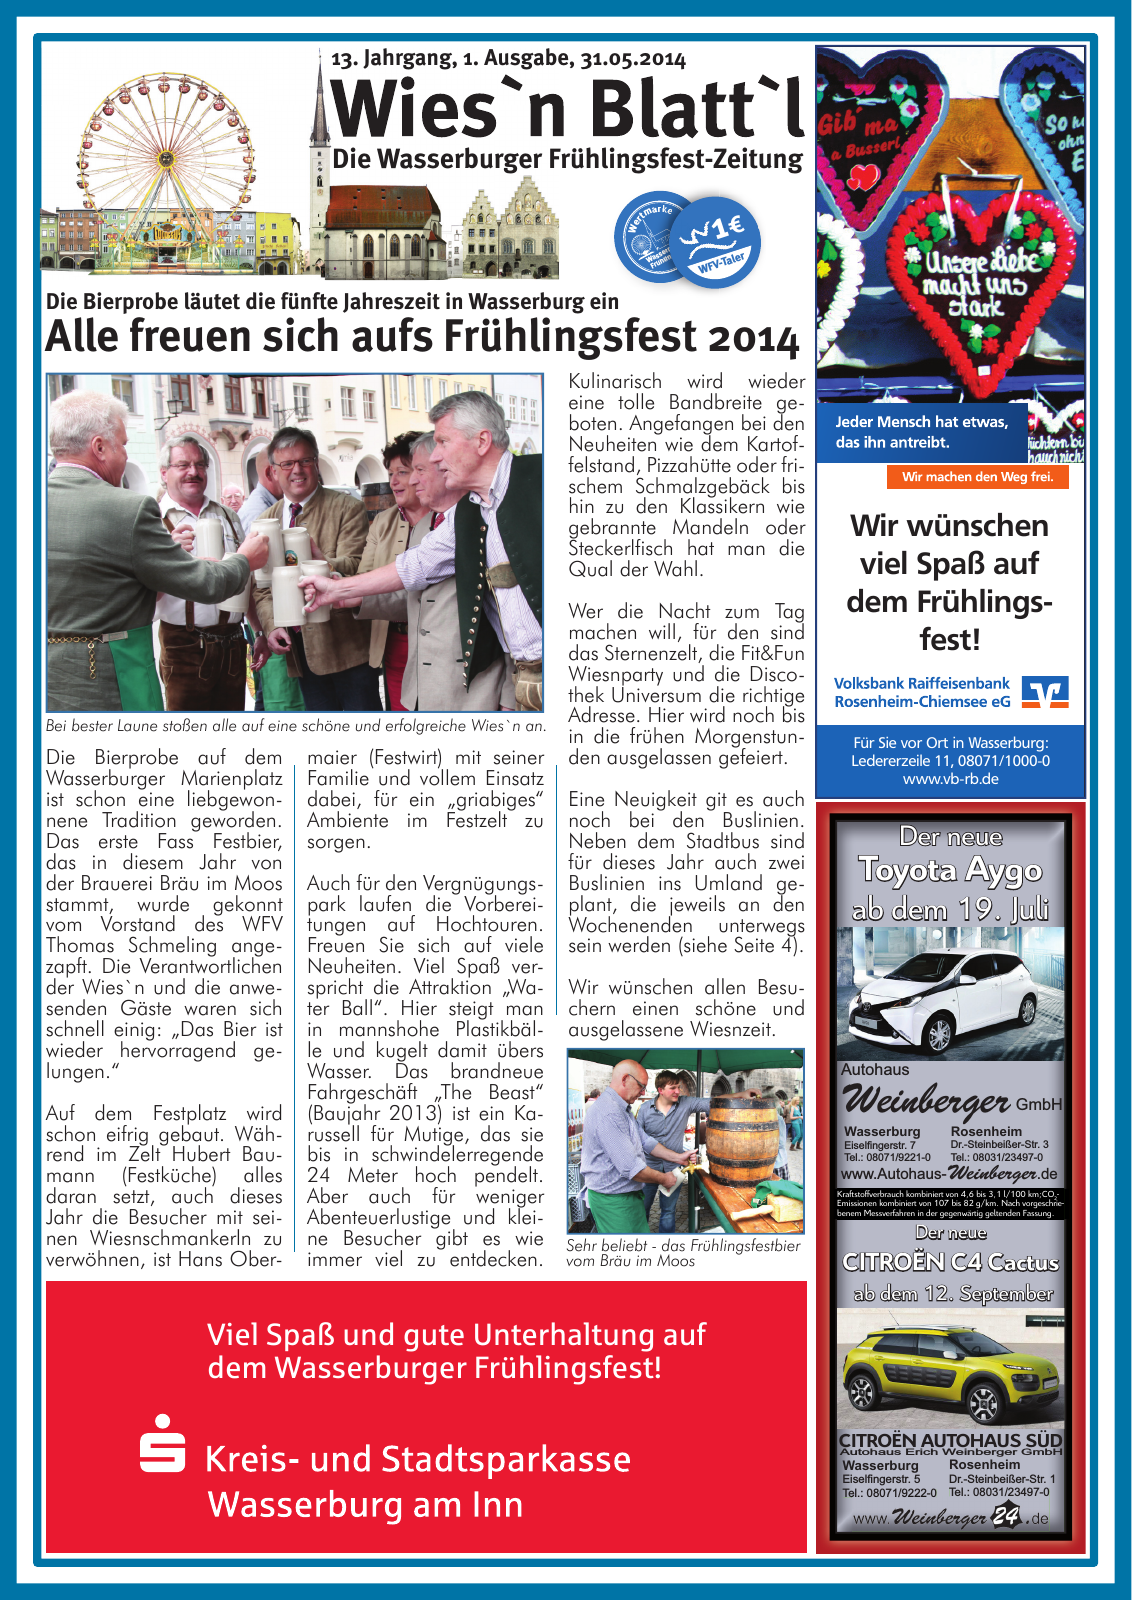 Vorschau Wasserburger Wiesnblattl 2014 Ausgabe 1 Seite 1